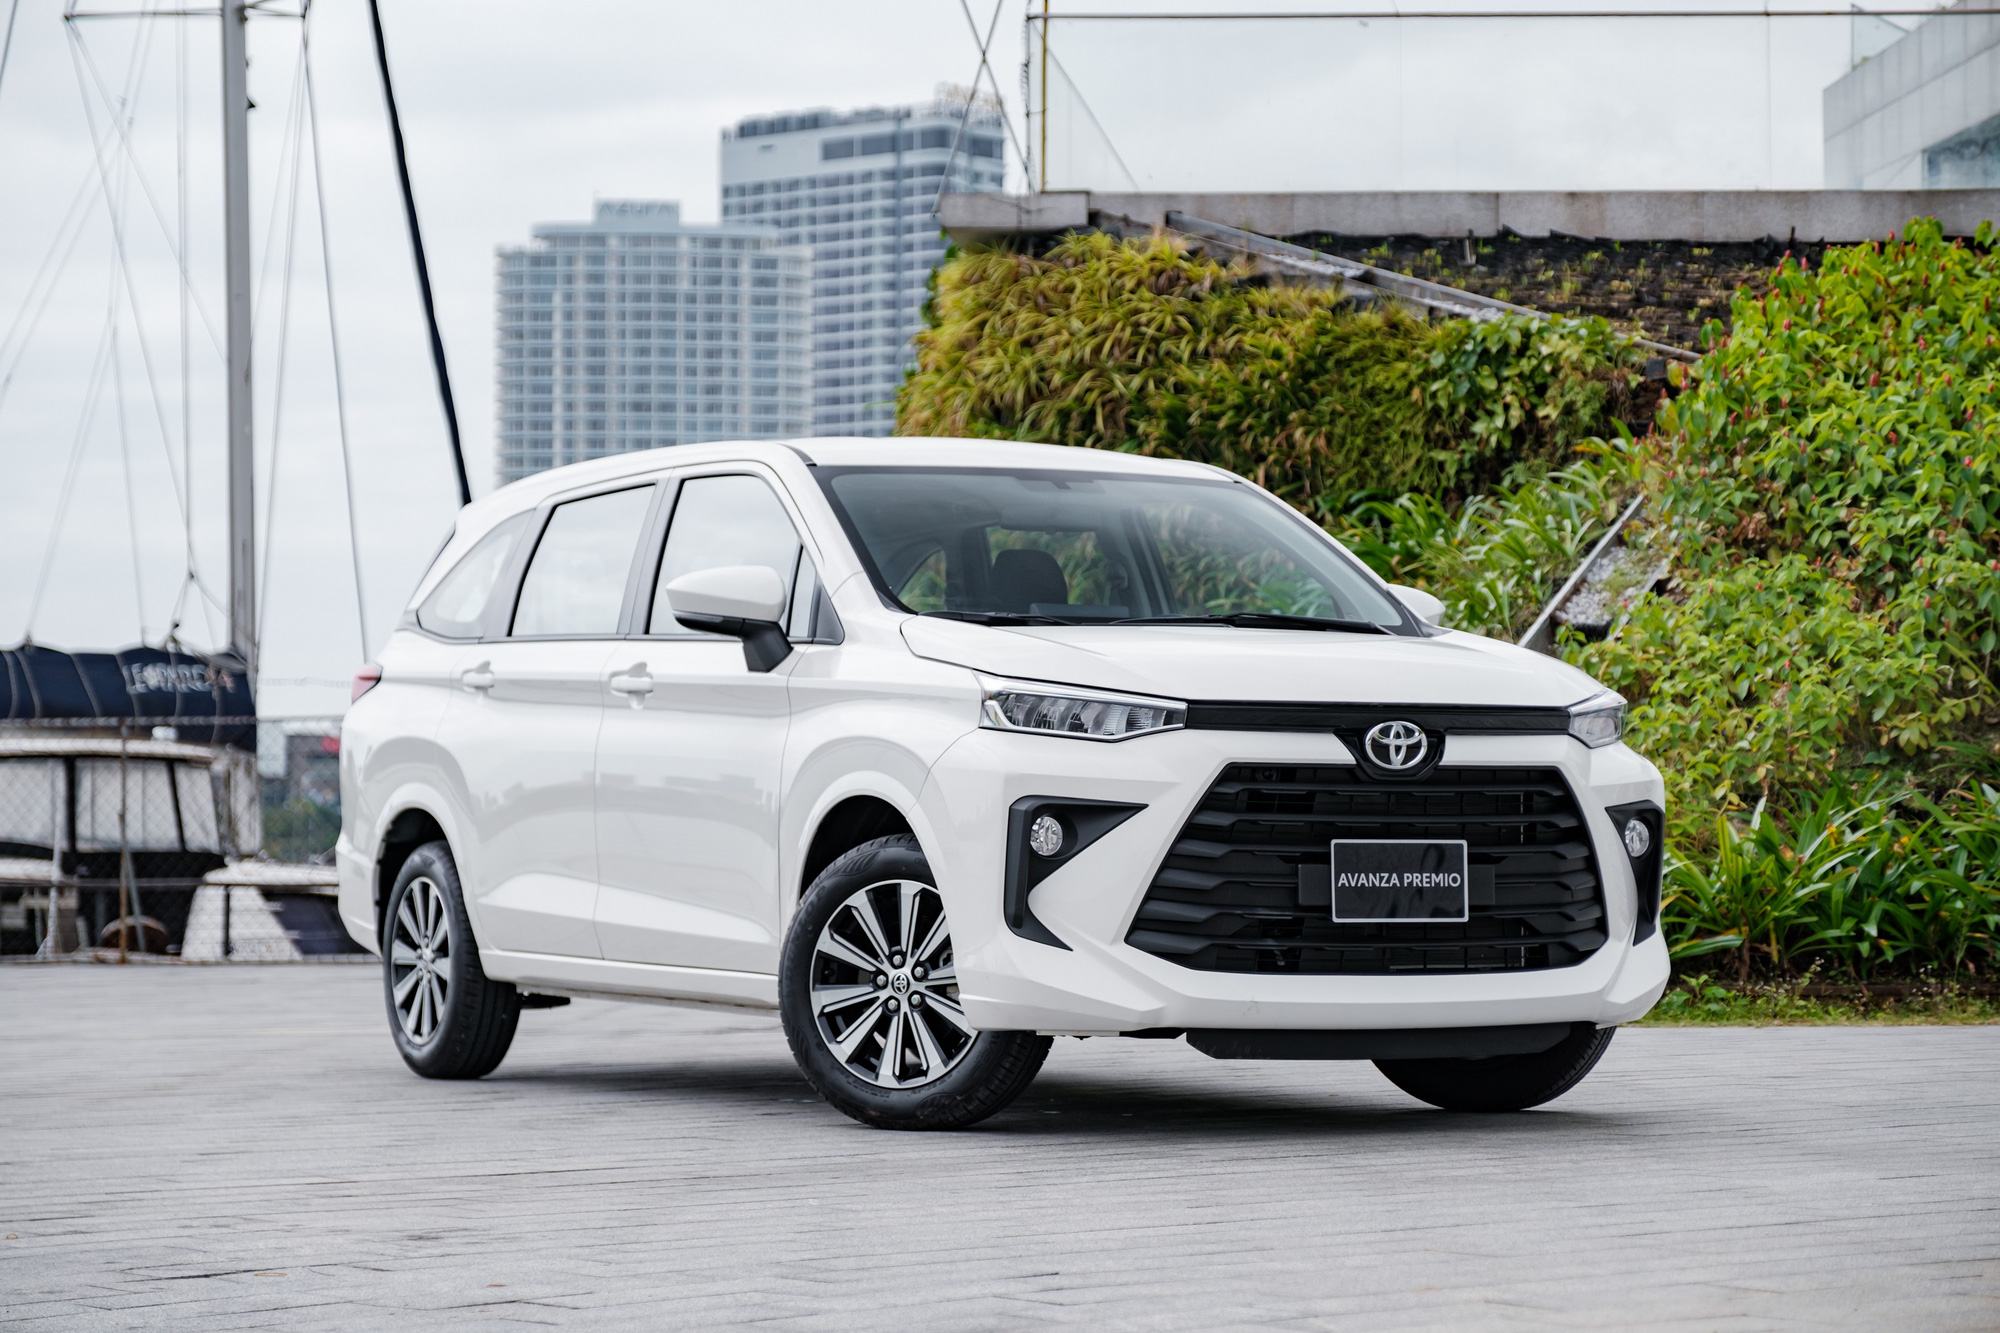 Ra mắt Toyota Avanza Premio và Veloz Cross 2022 tại Việt Nam, giá khởi điểm từ 548 triệu đồng, đủ sức thay Innova - Ảnh 4.